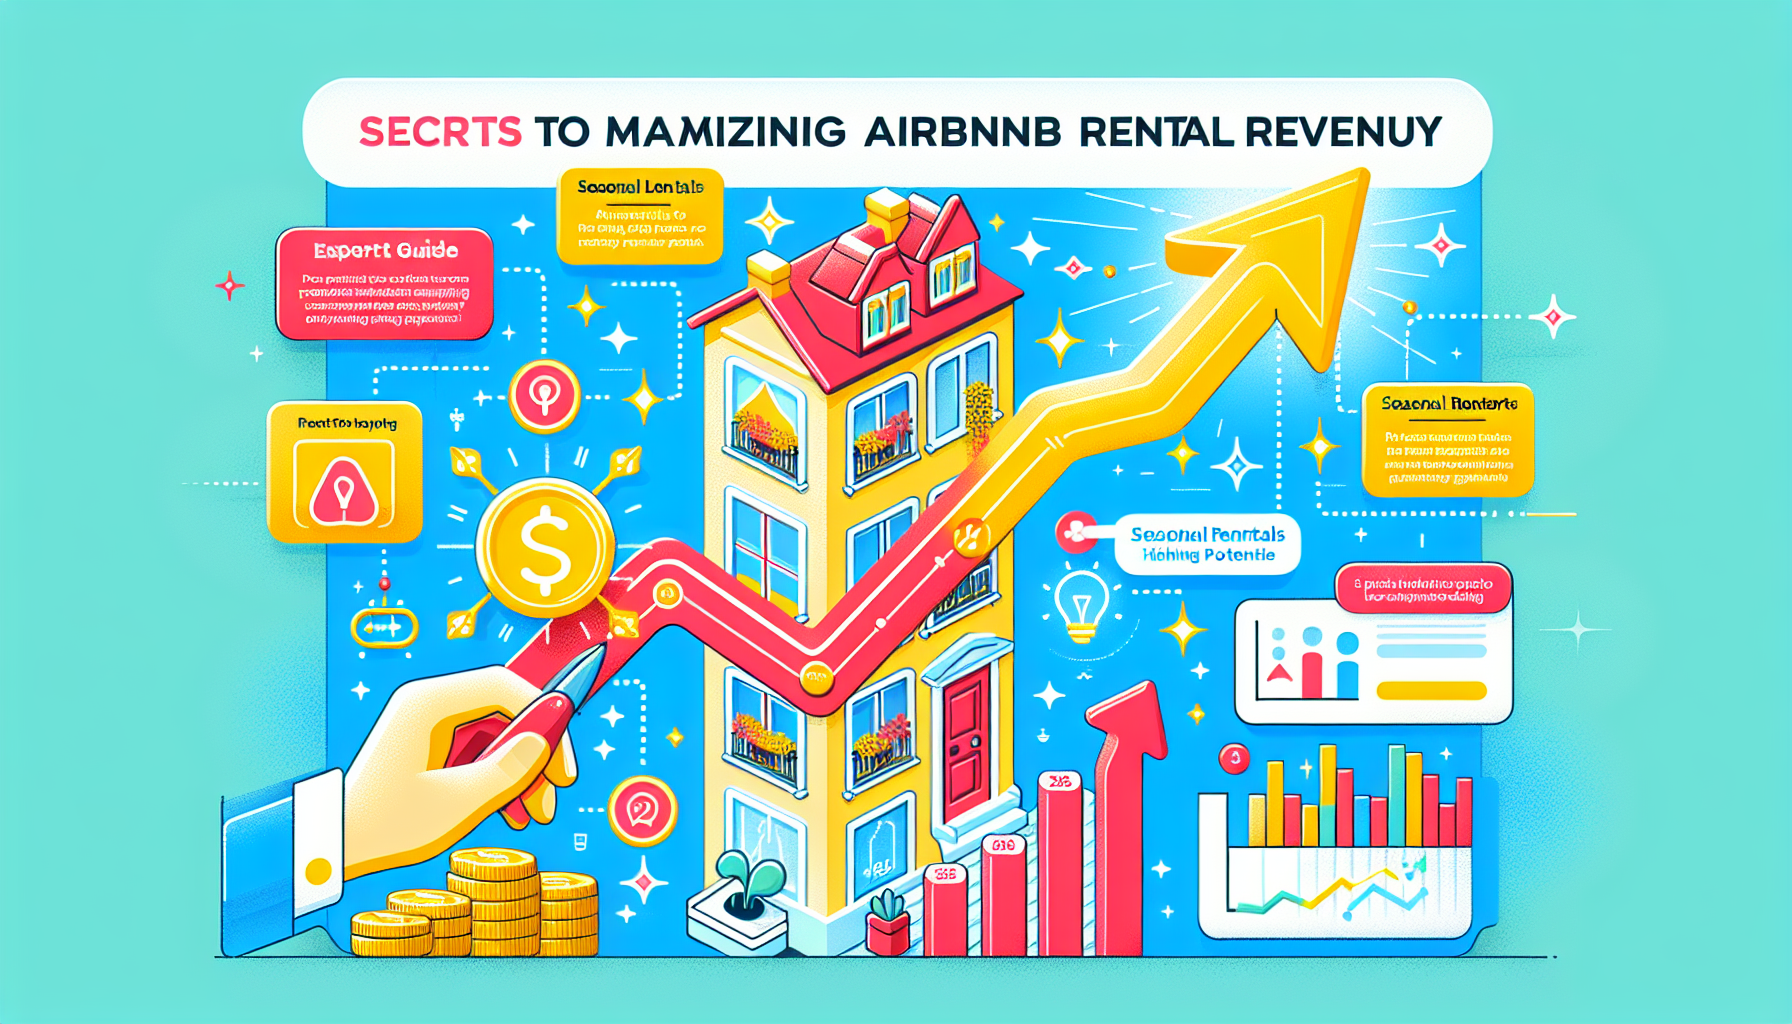 découvrez comment améliorer la gestion de vos locations saisonnières sur airbnb et maximiser votre rentabilité.